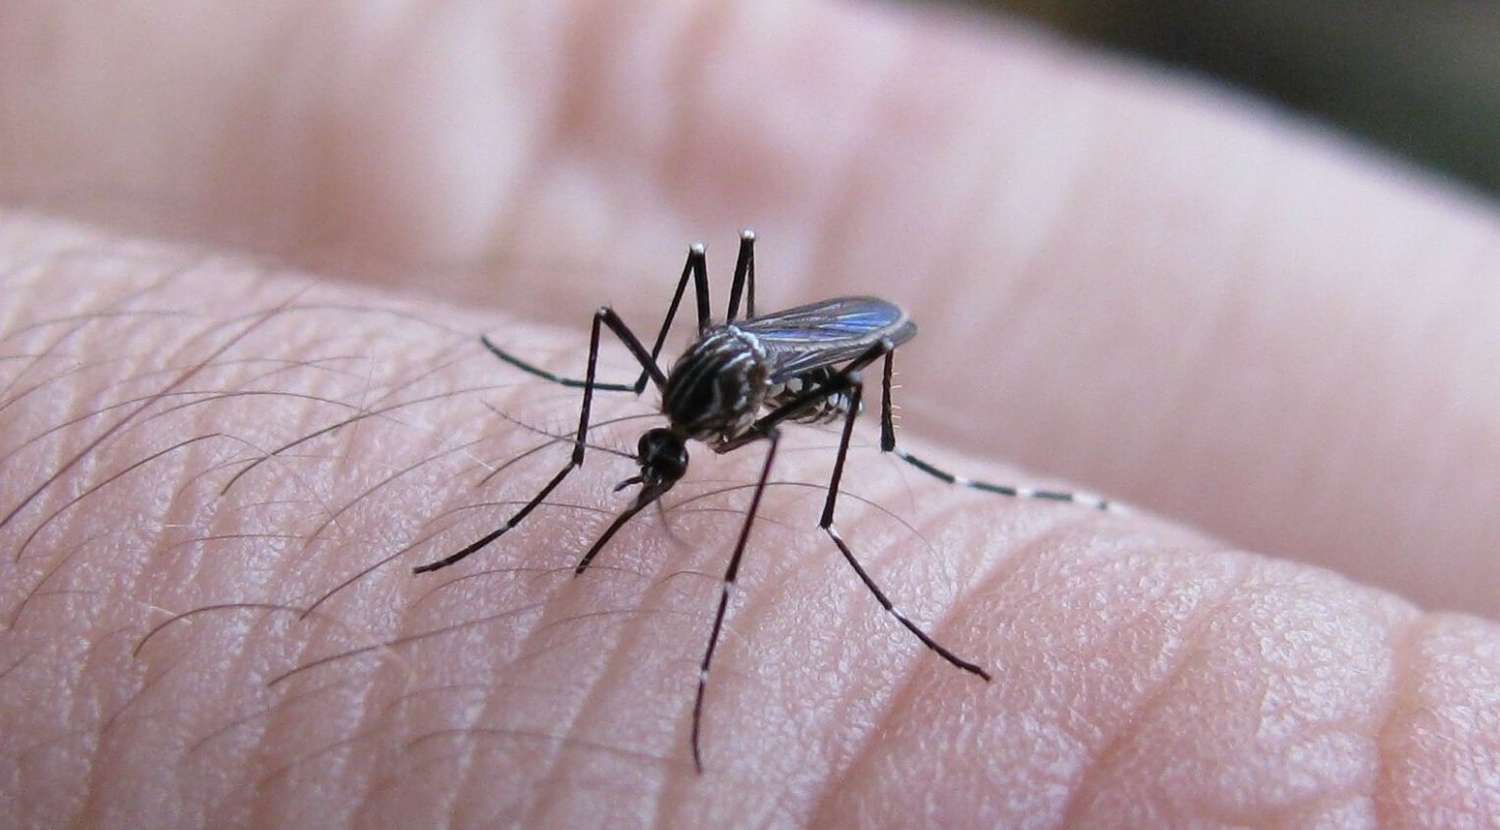 Hay 397 contagios de dengue en la provincia: cuántos casos hay en Gualeguaychú